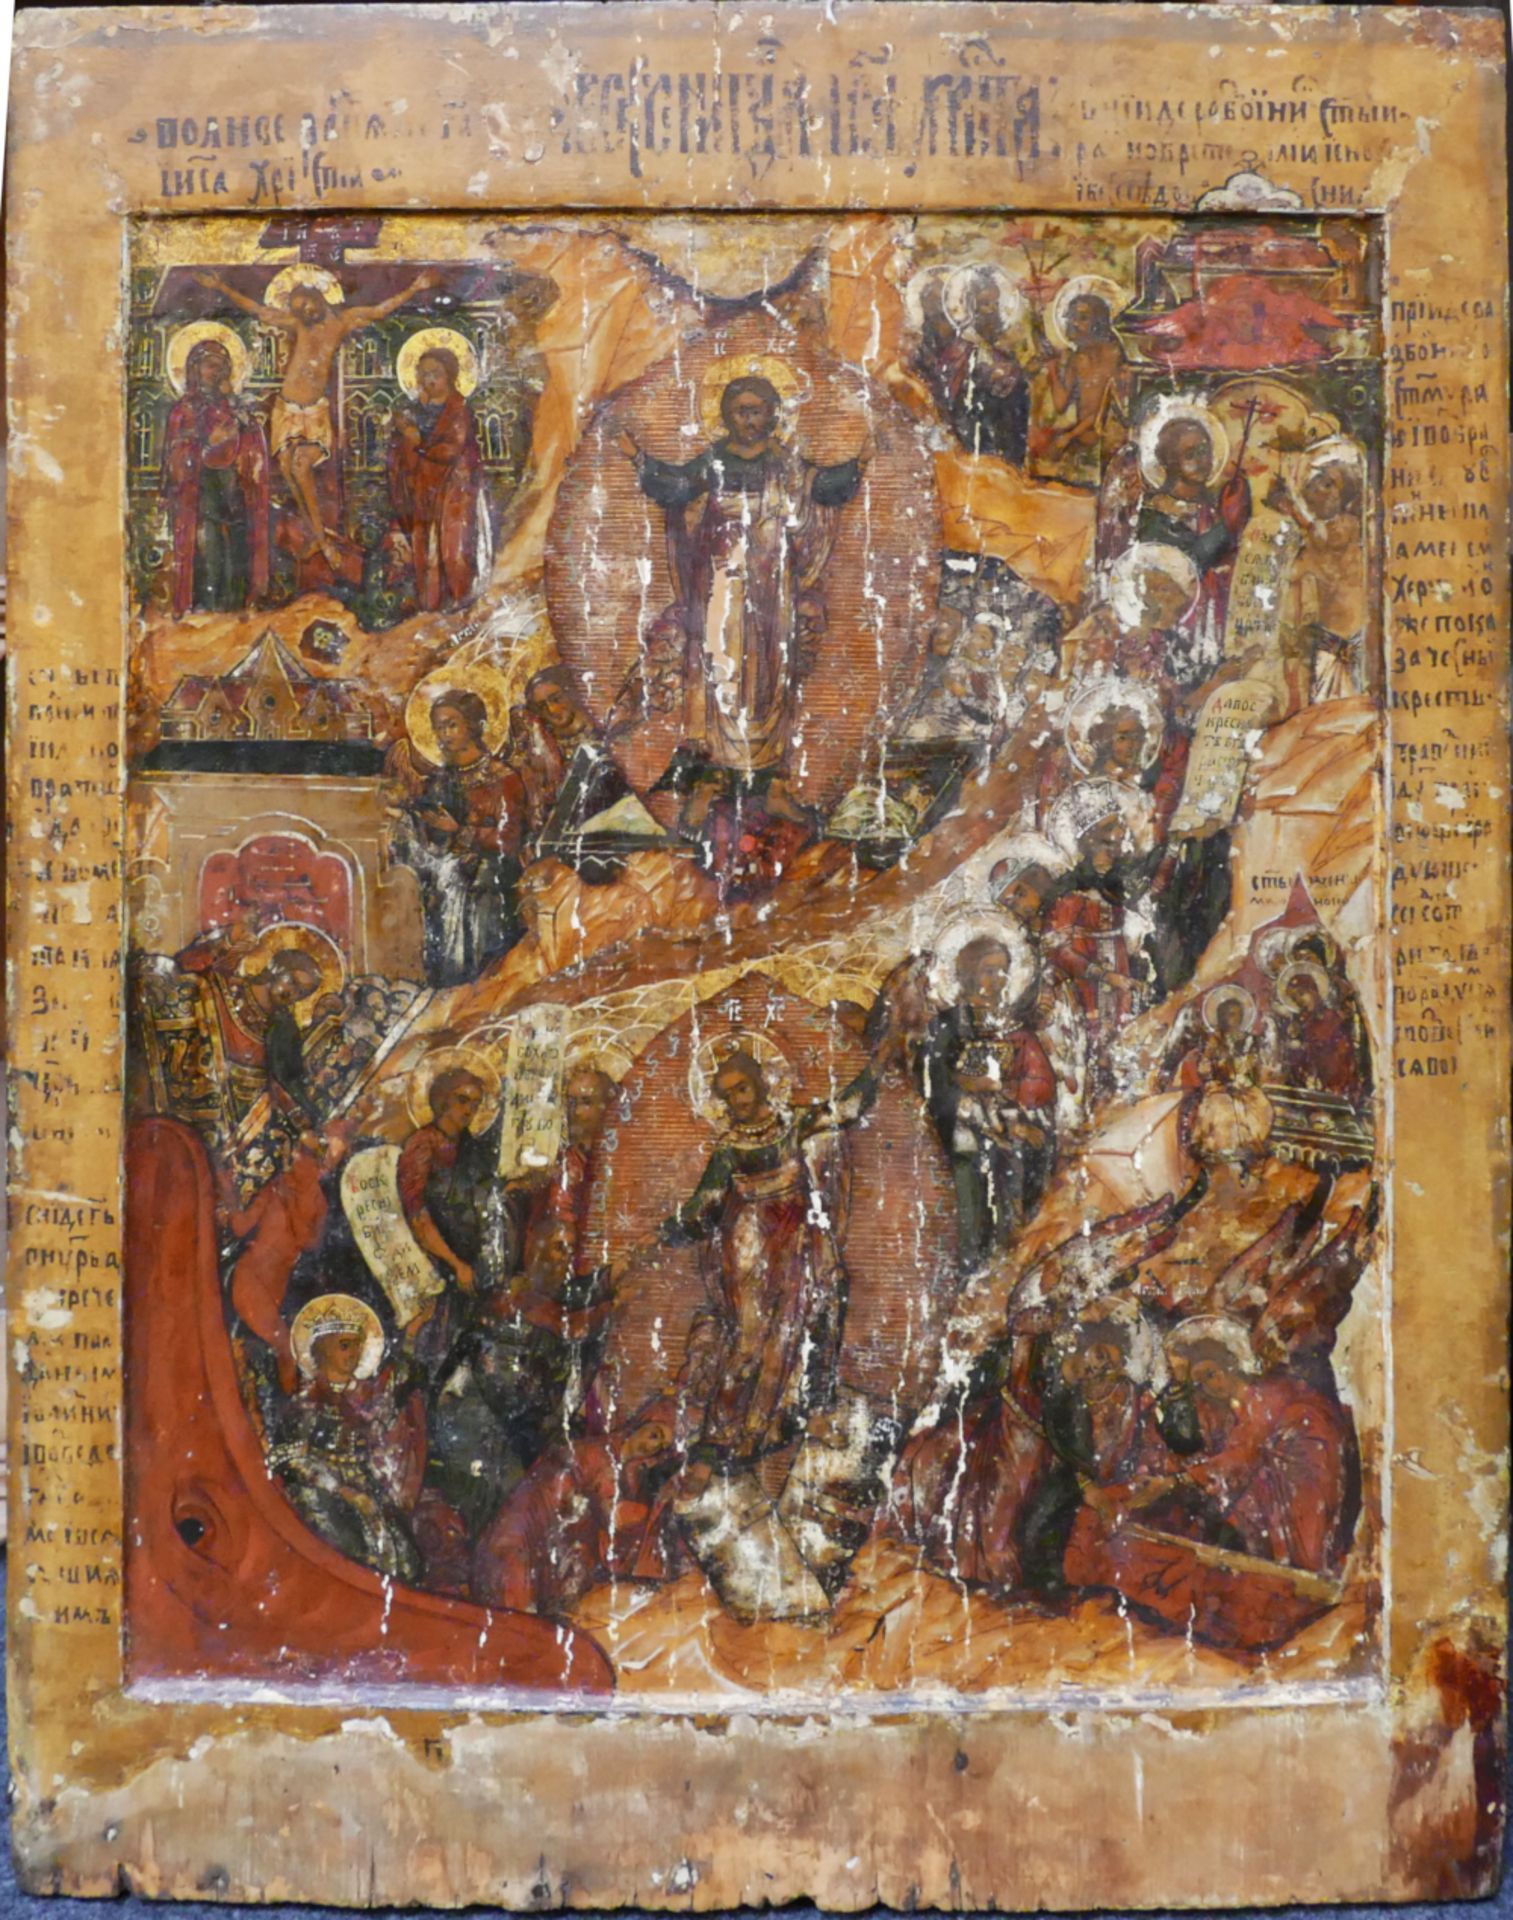 1 großformatige Ikone wohl Russalnd 19. Jh. mit Szenen aus dem Leben Jesu, ca. 69x53cm,